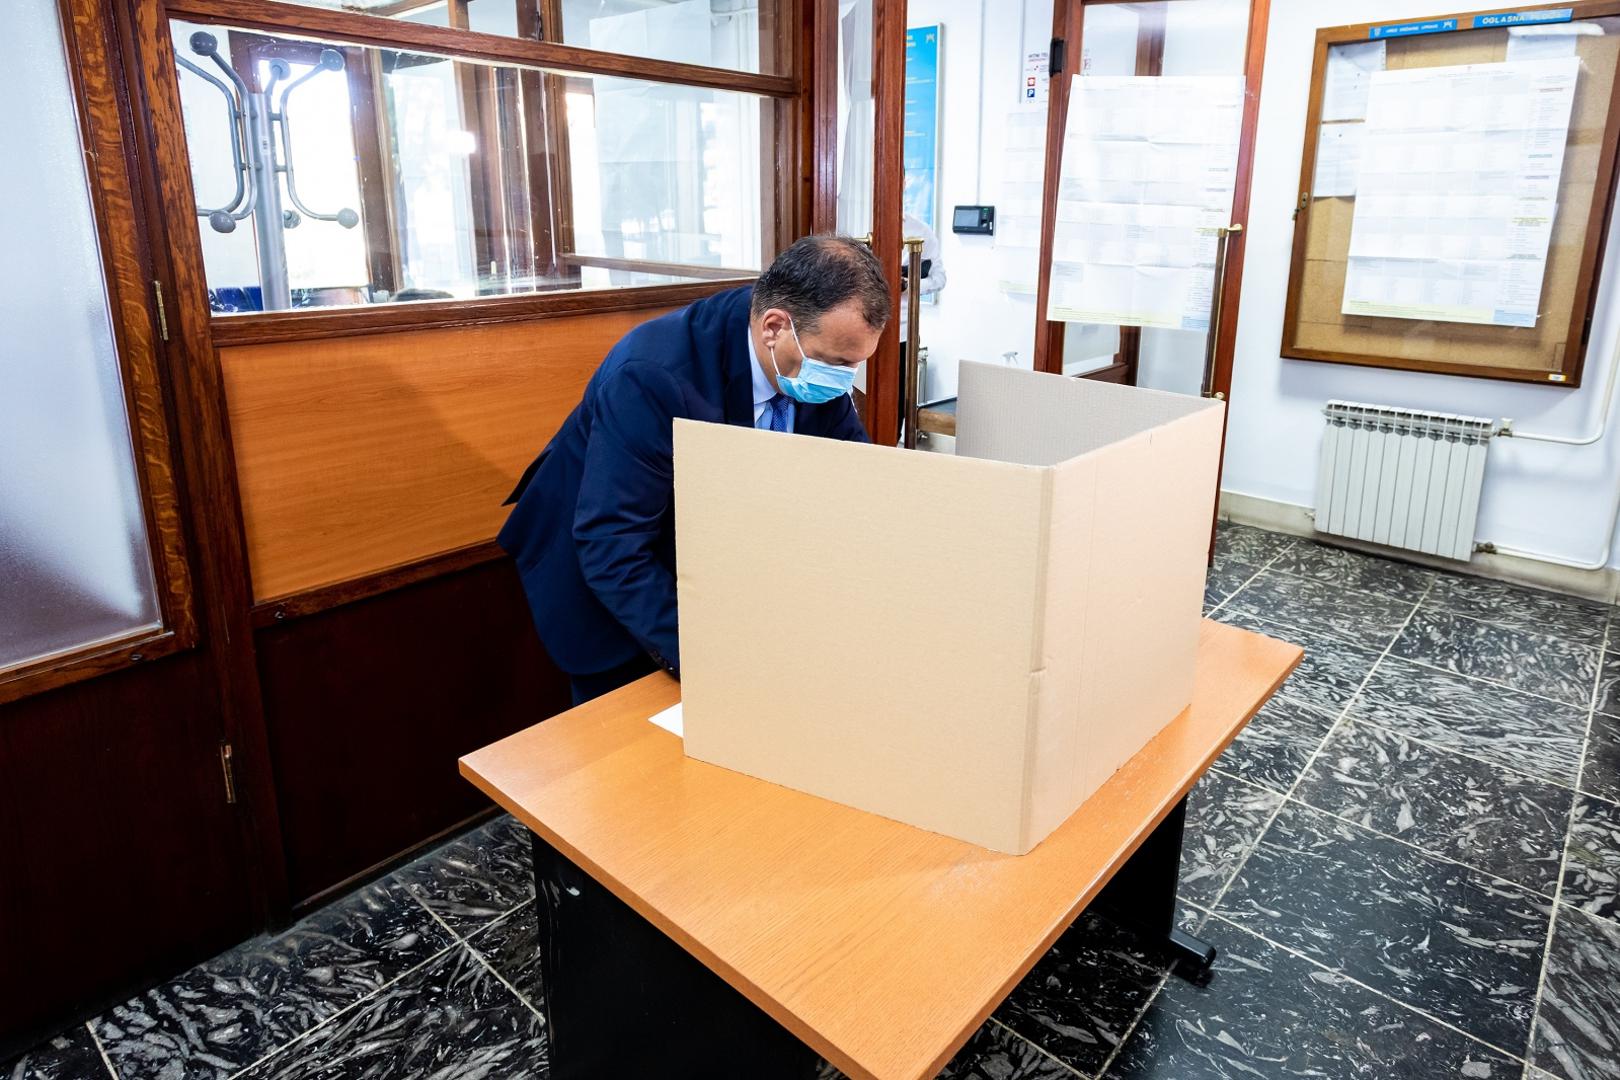 05.07.2020., Split - Ministar zdravstva u Vladi Republike Hrvatske Vili Beros glasao je na glasackom mjestu u Splitu.
Photo: Milan Sabic/PIXSELL